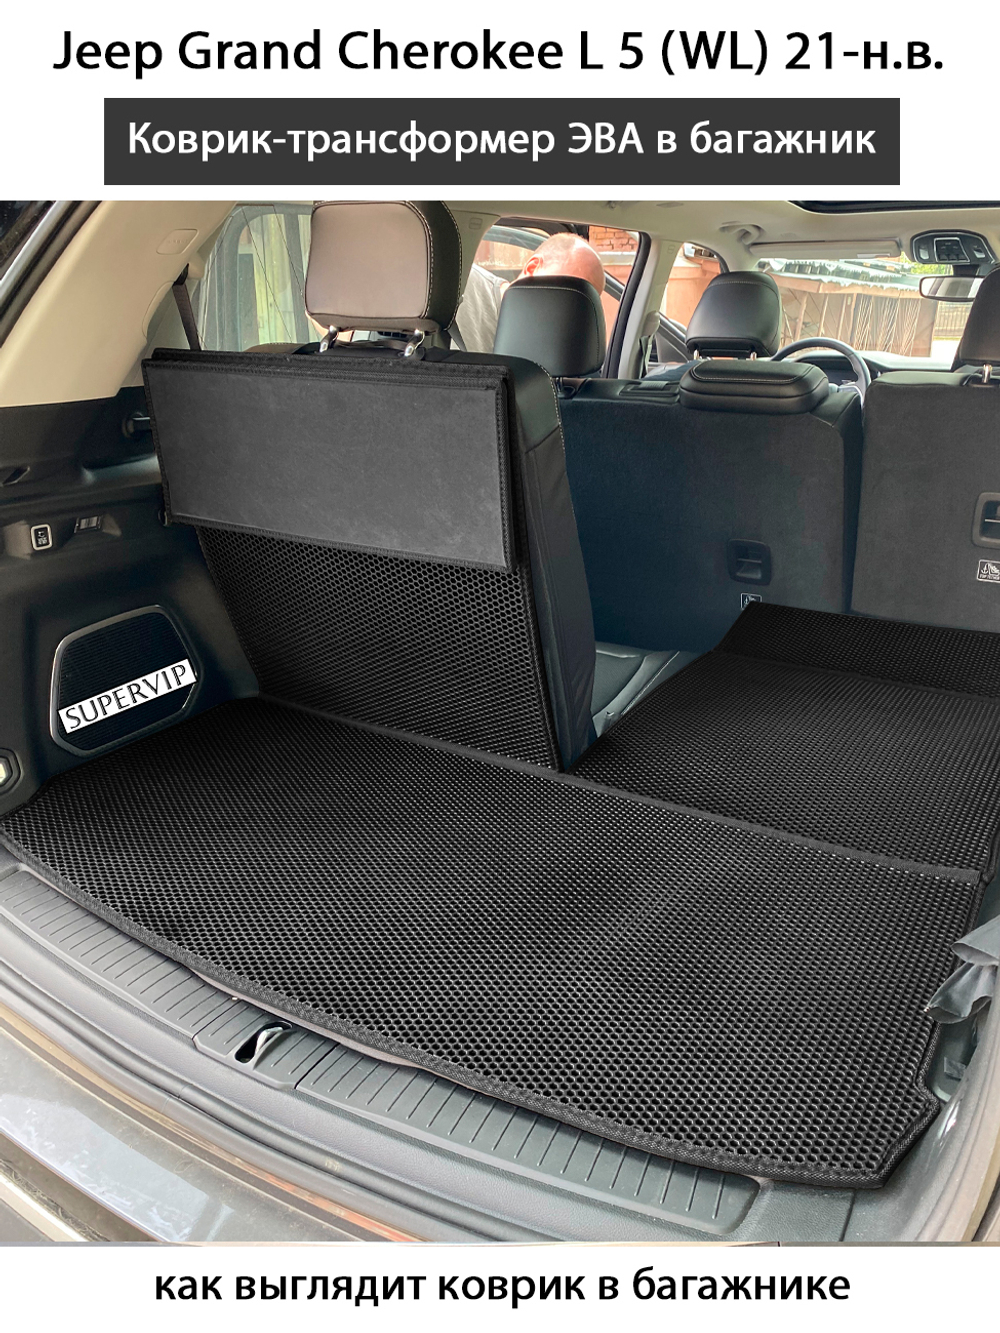 коврик-трансформер эво в багажник авто для Jeep Grand Cherokee 5 (WL) 21-н.в. от supervip